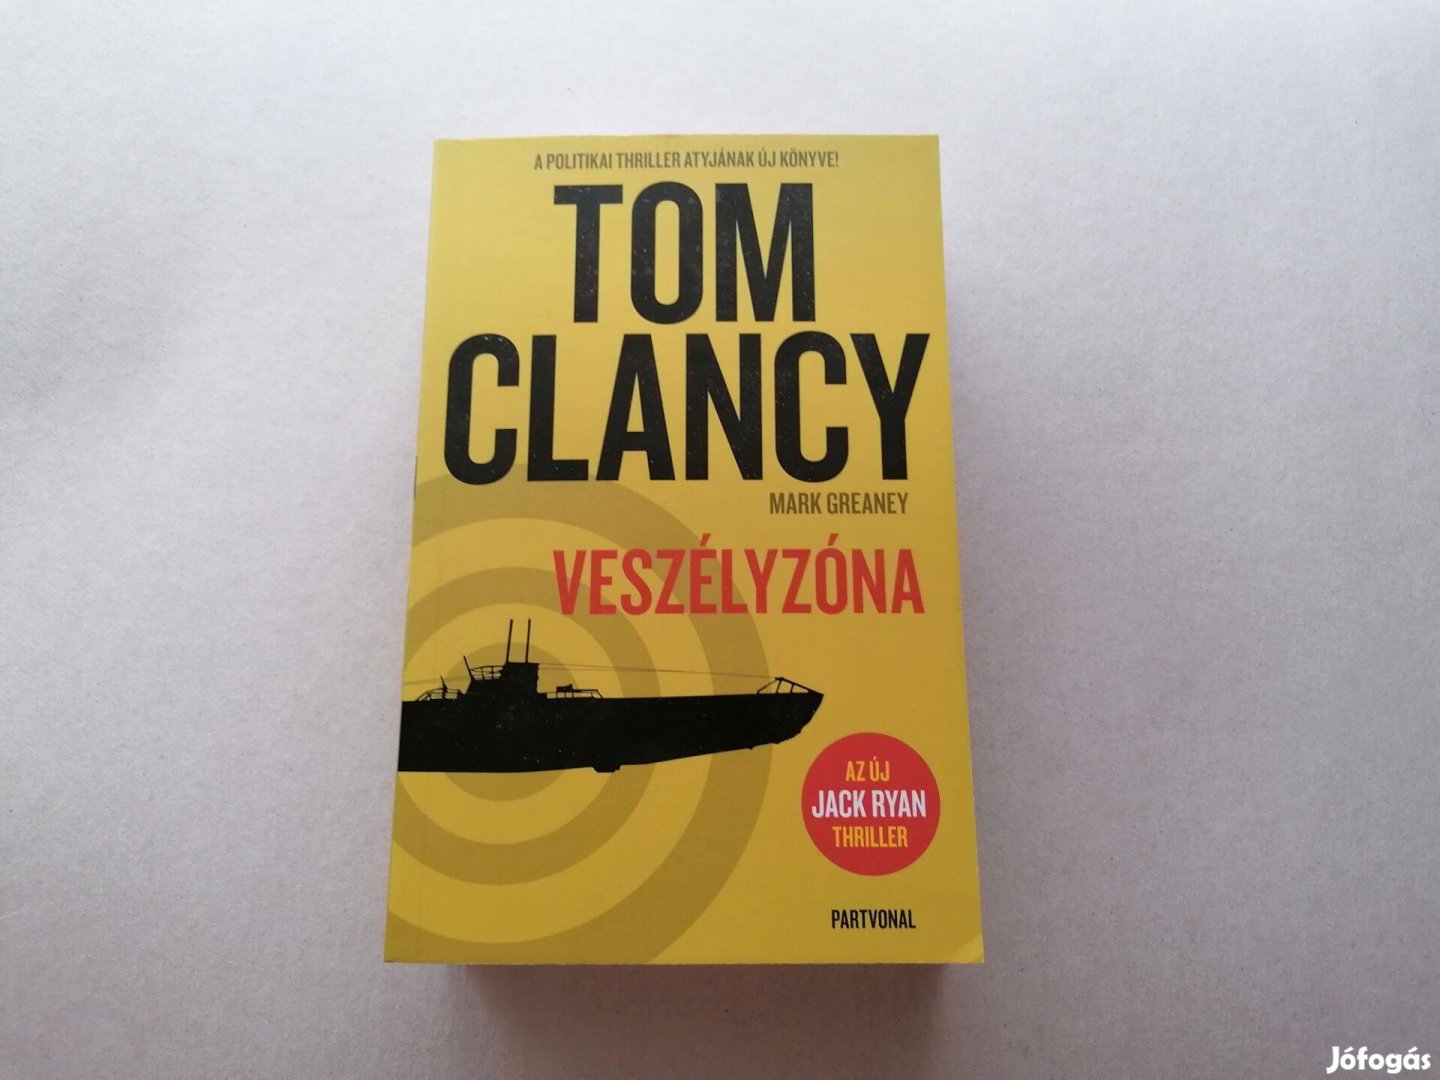 Tom Clancy: Veszélyzóna c. Új könyve eladó !